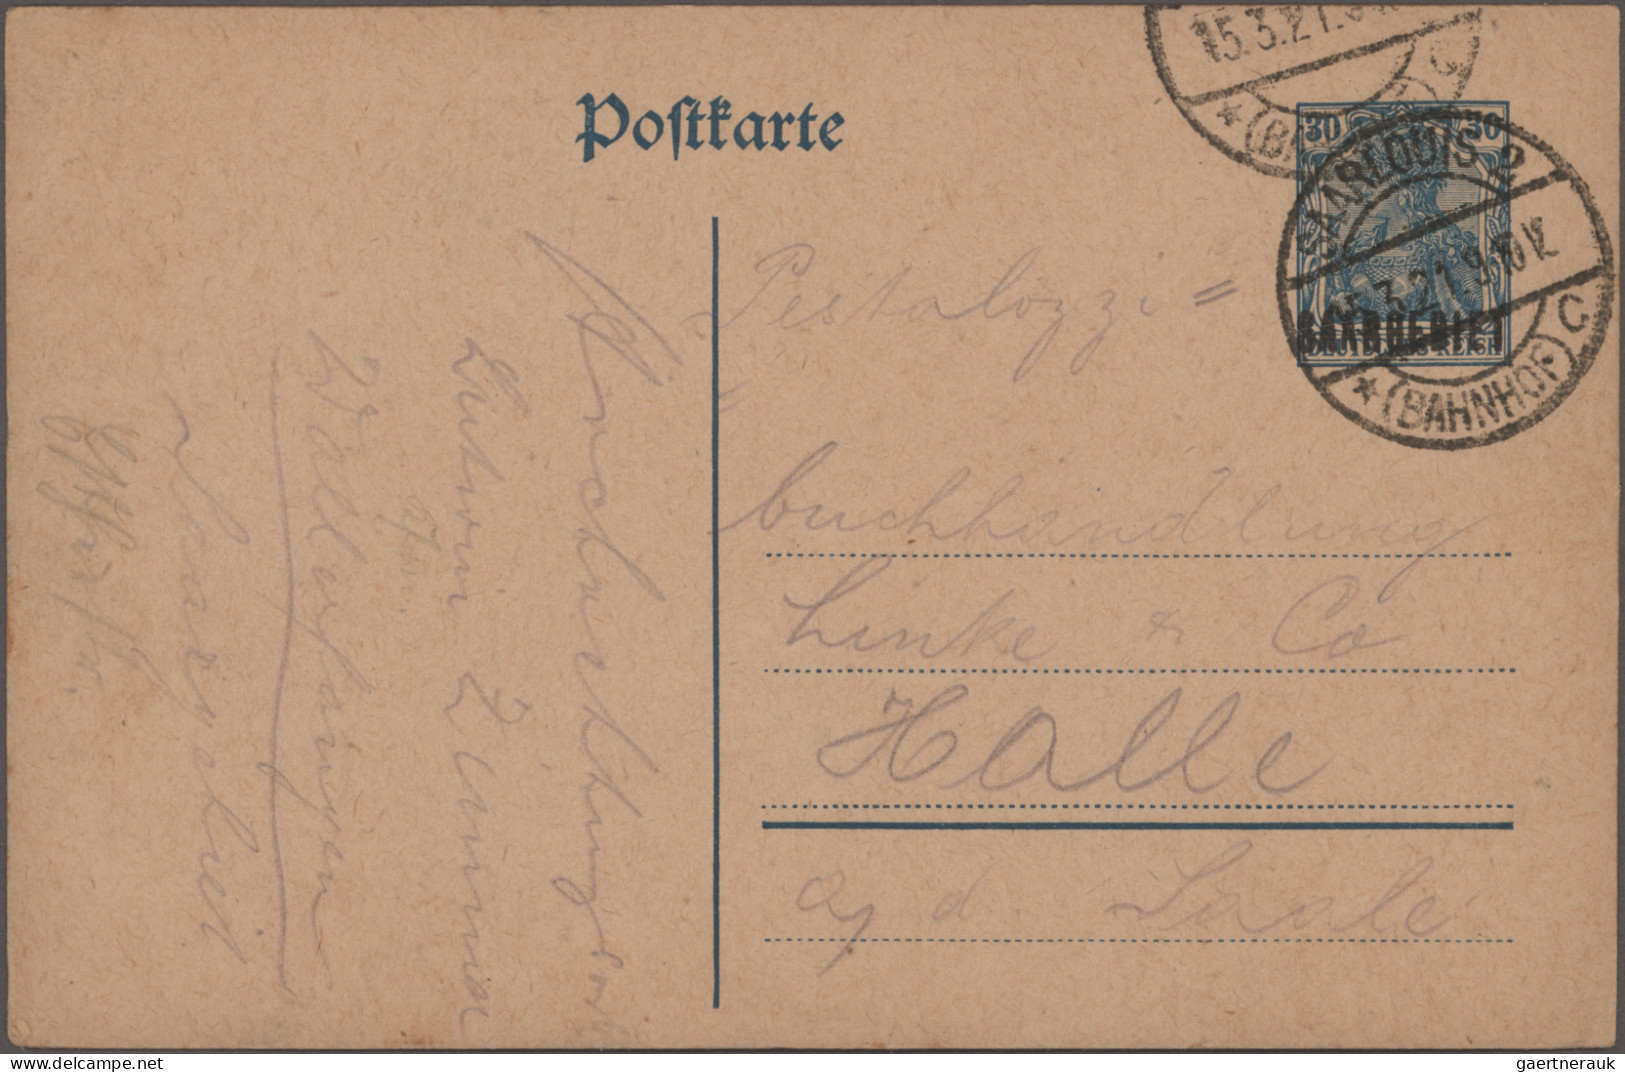 Deutsche Abstimmungsgebiete: Saargebiet - Ganzsachen: 1920-1933 Kollektion von m